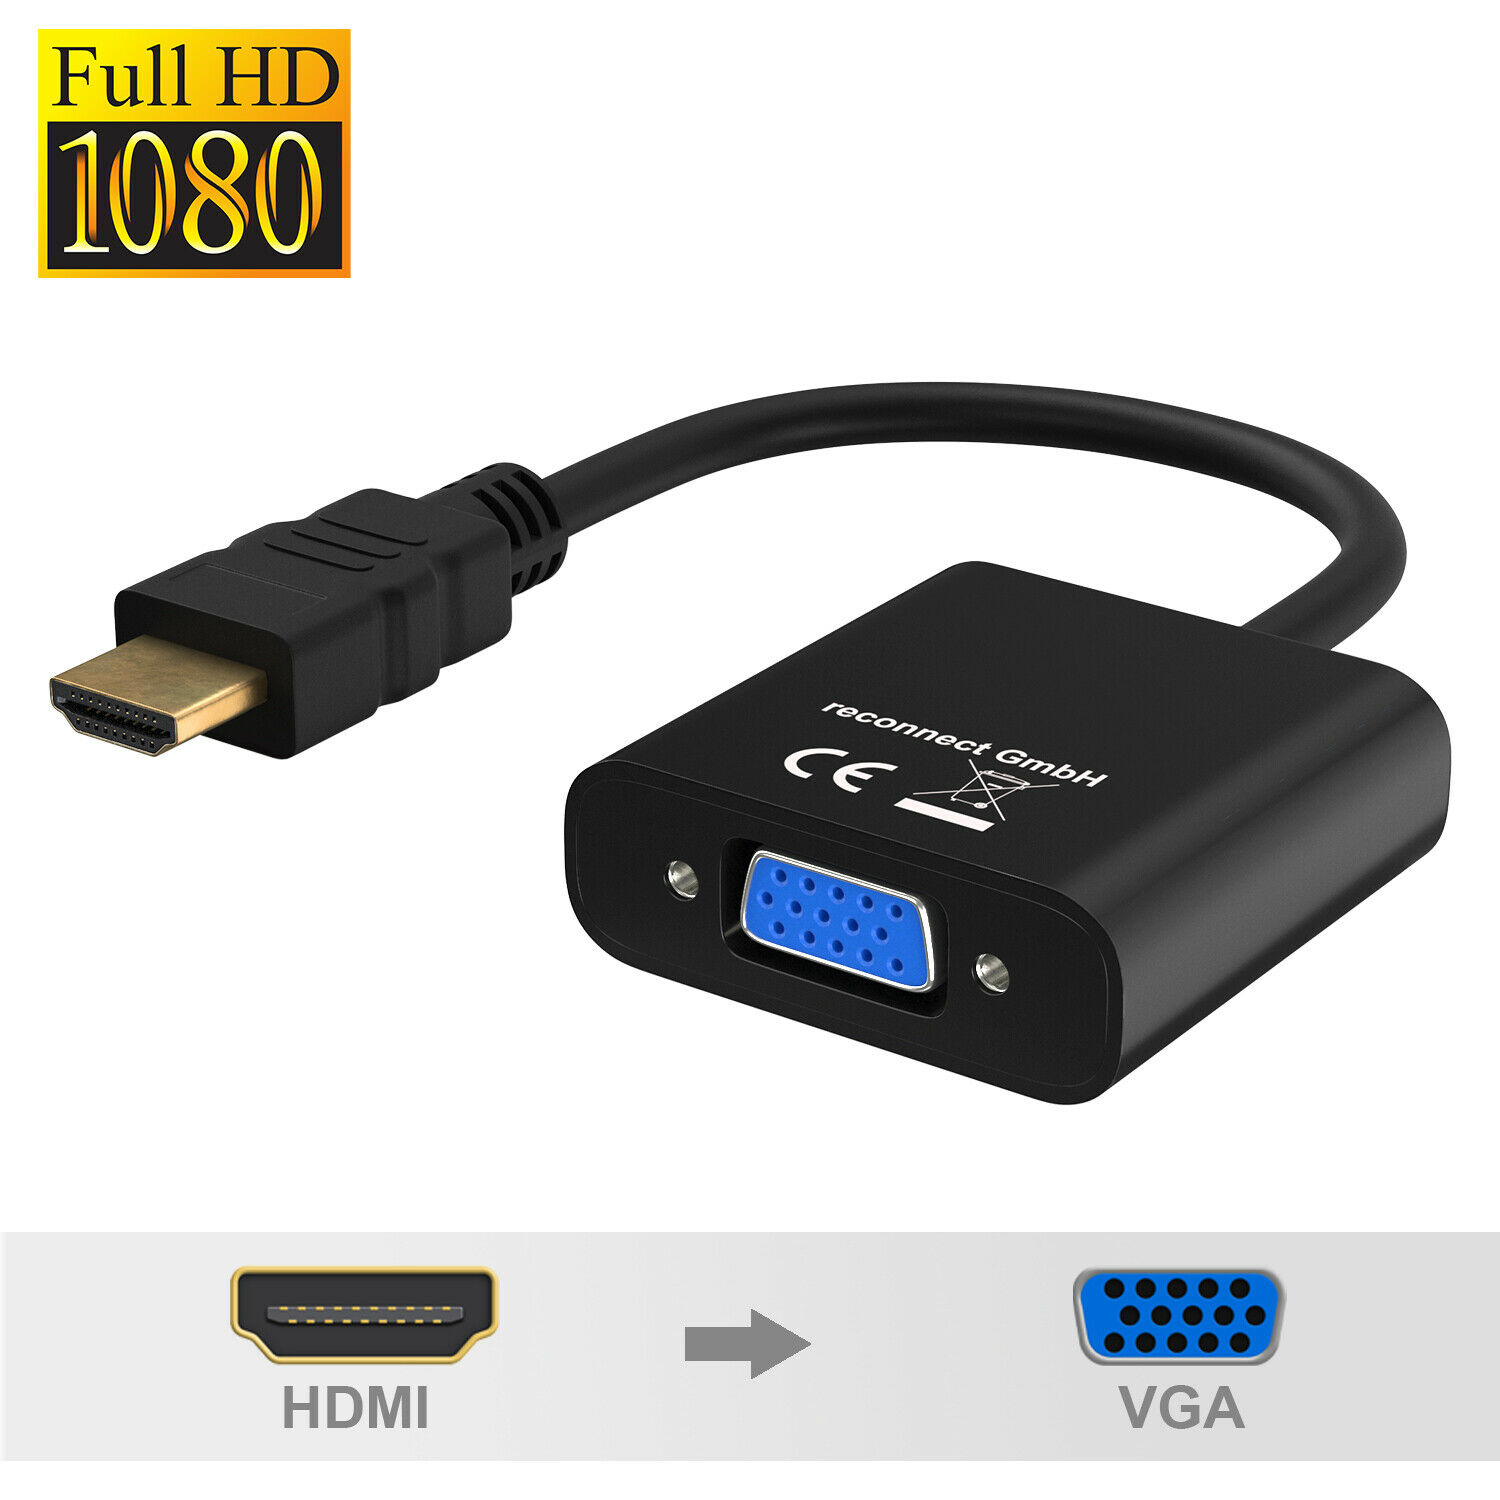 Переходник HDMI VGA - Как передать сигнал с HDMI на VGA и наоборот